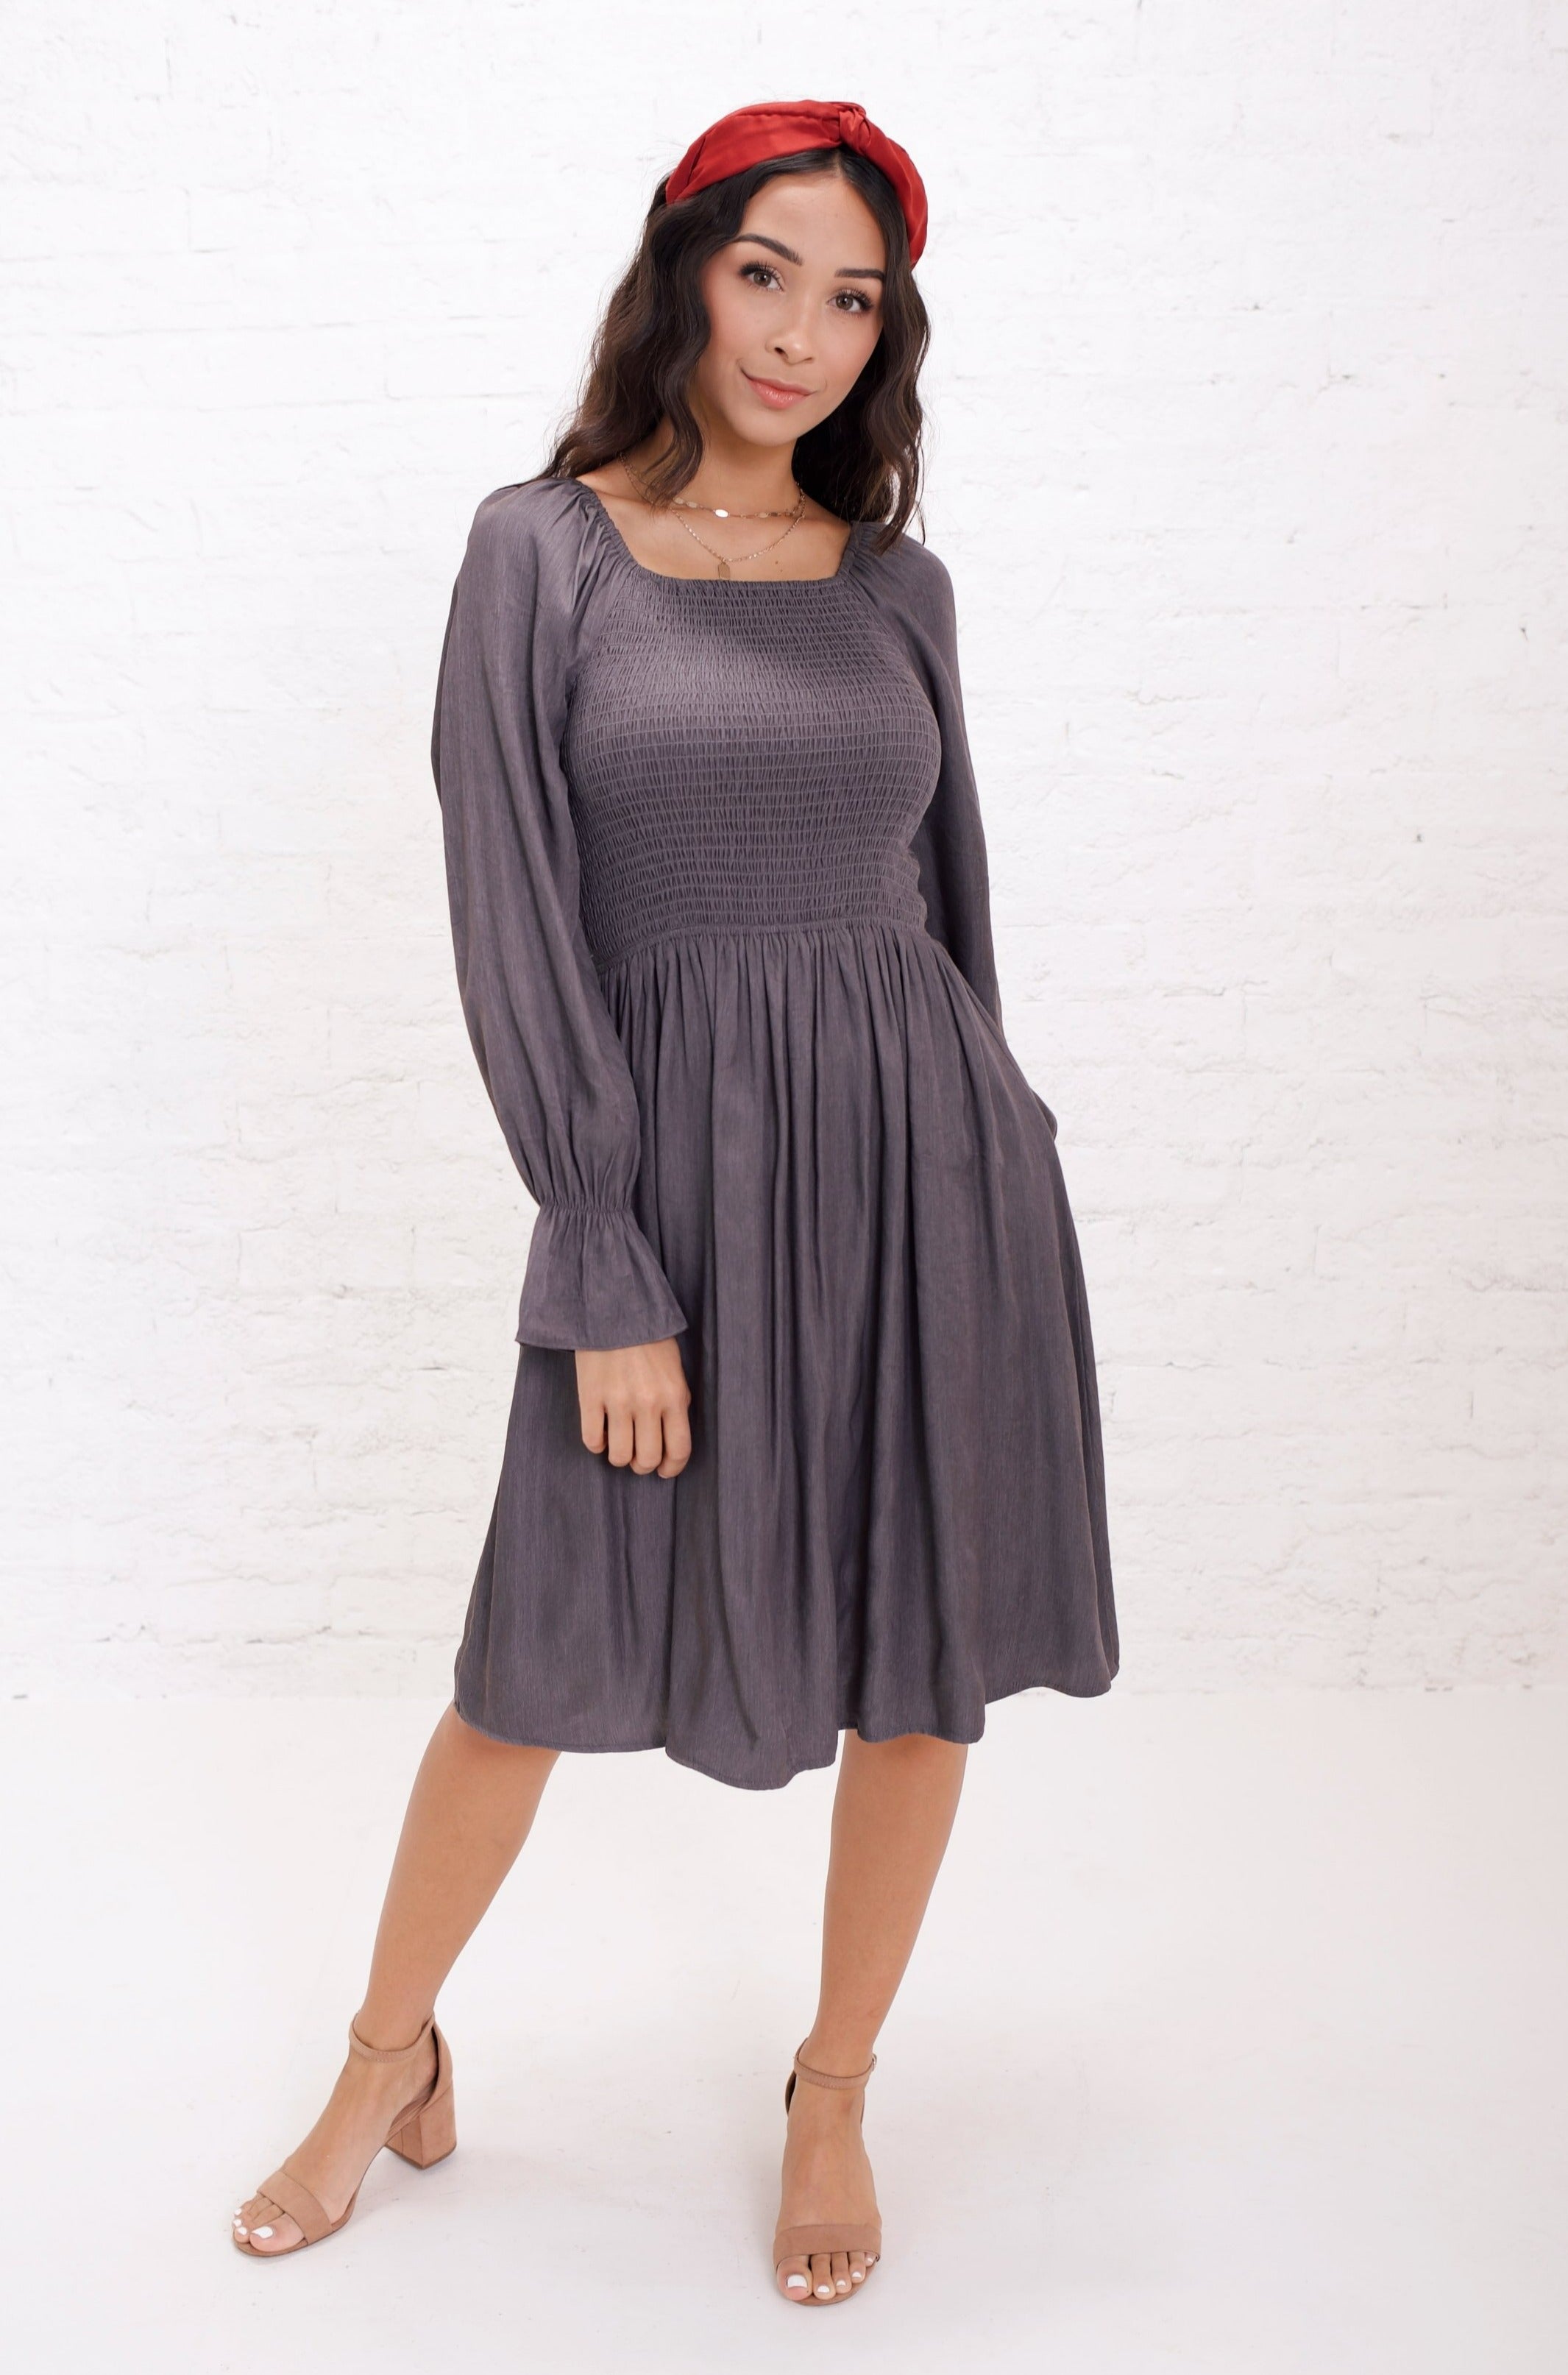 https://tildenco.com/cdn/shop/products/Juliet-Dress-in-Frosted-Charcoal-mikarose-dress-Mikarose.jpg?v=1669064596&width=2131